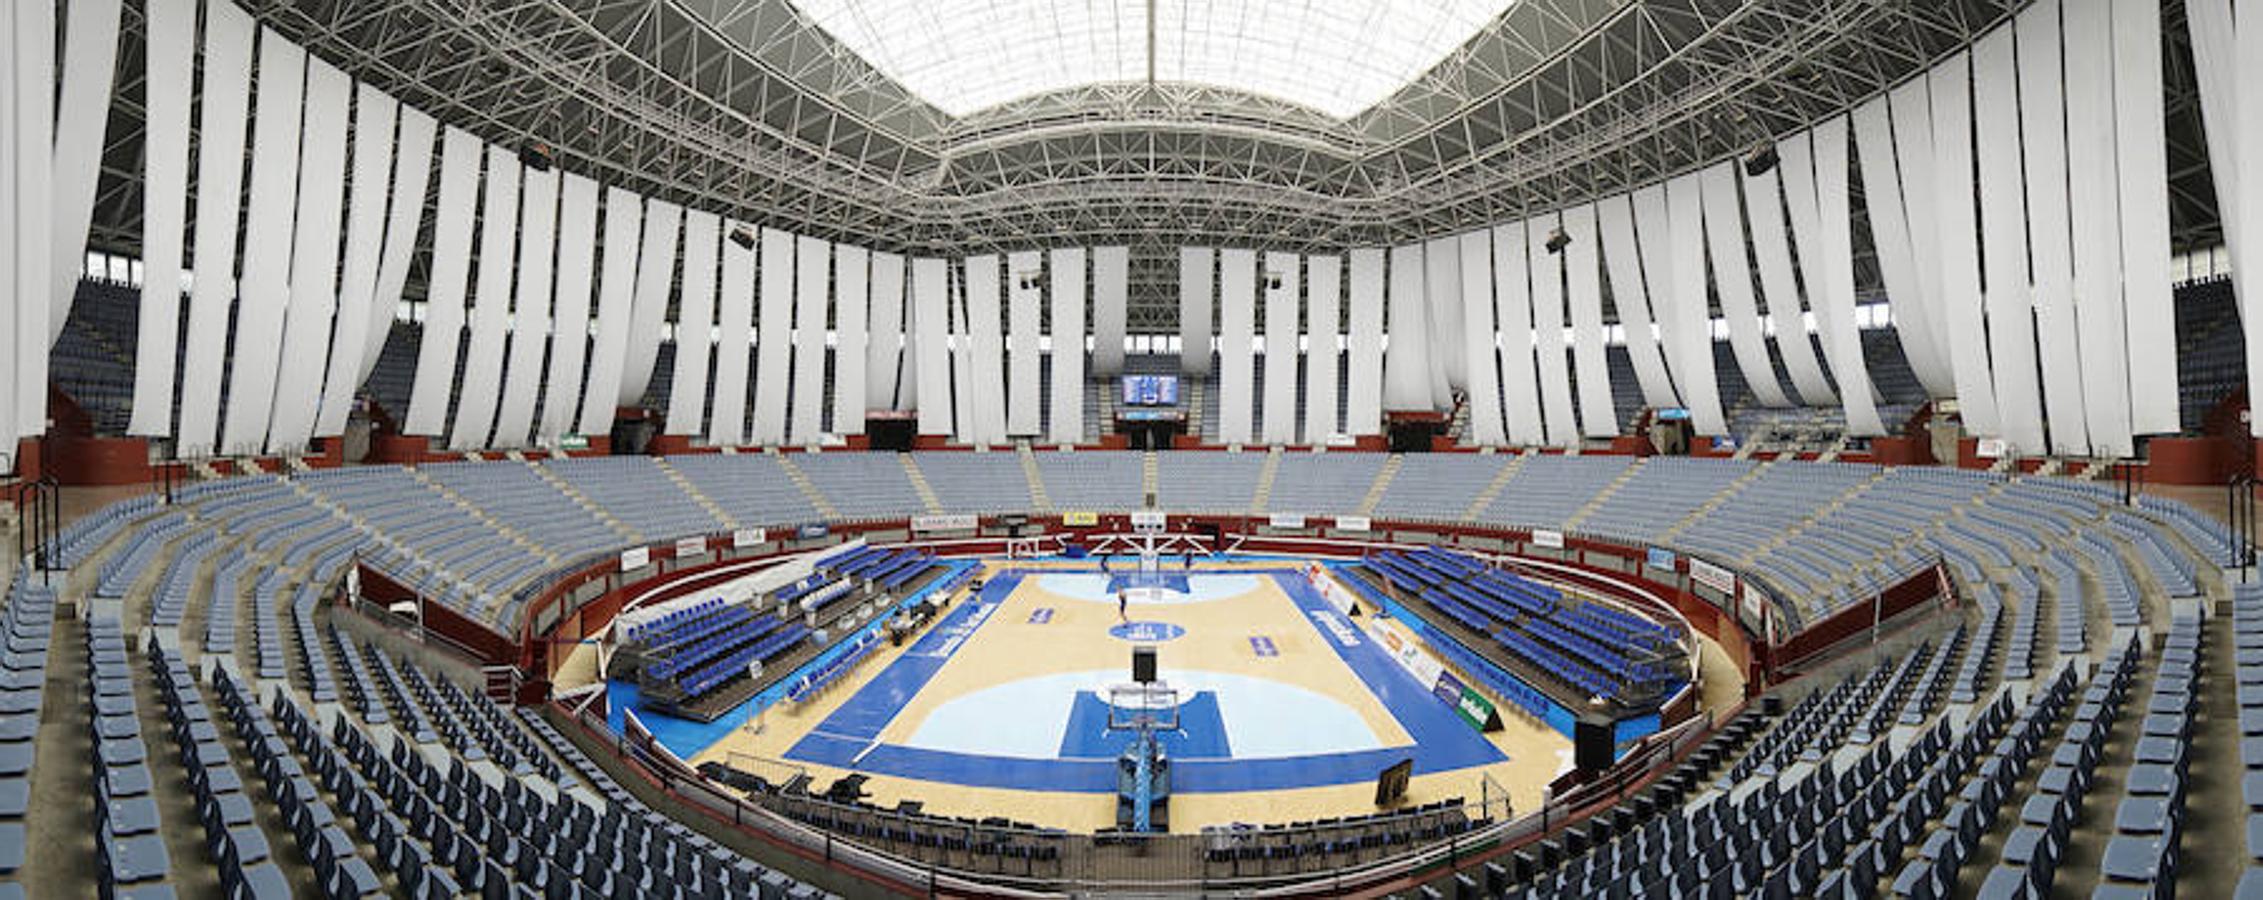 La cancha del Gipuzkoa Basket ha sido renovada de arriba abajo para acoger los partidos de la temporada en la Liga Endesa. Se estrena este miércoles ante el Betis